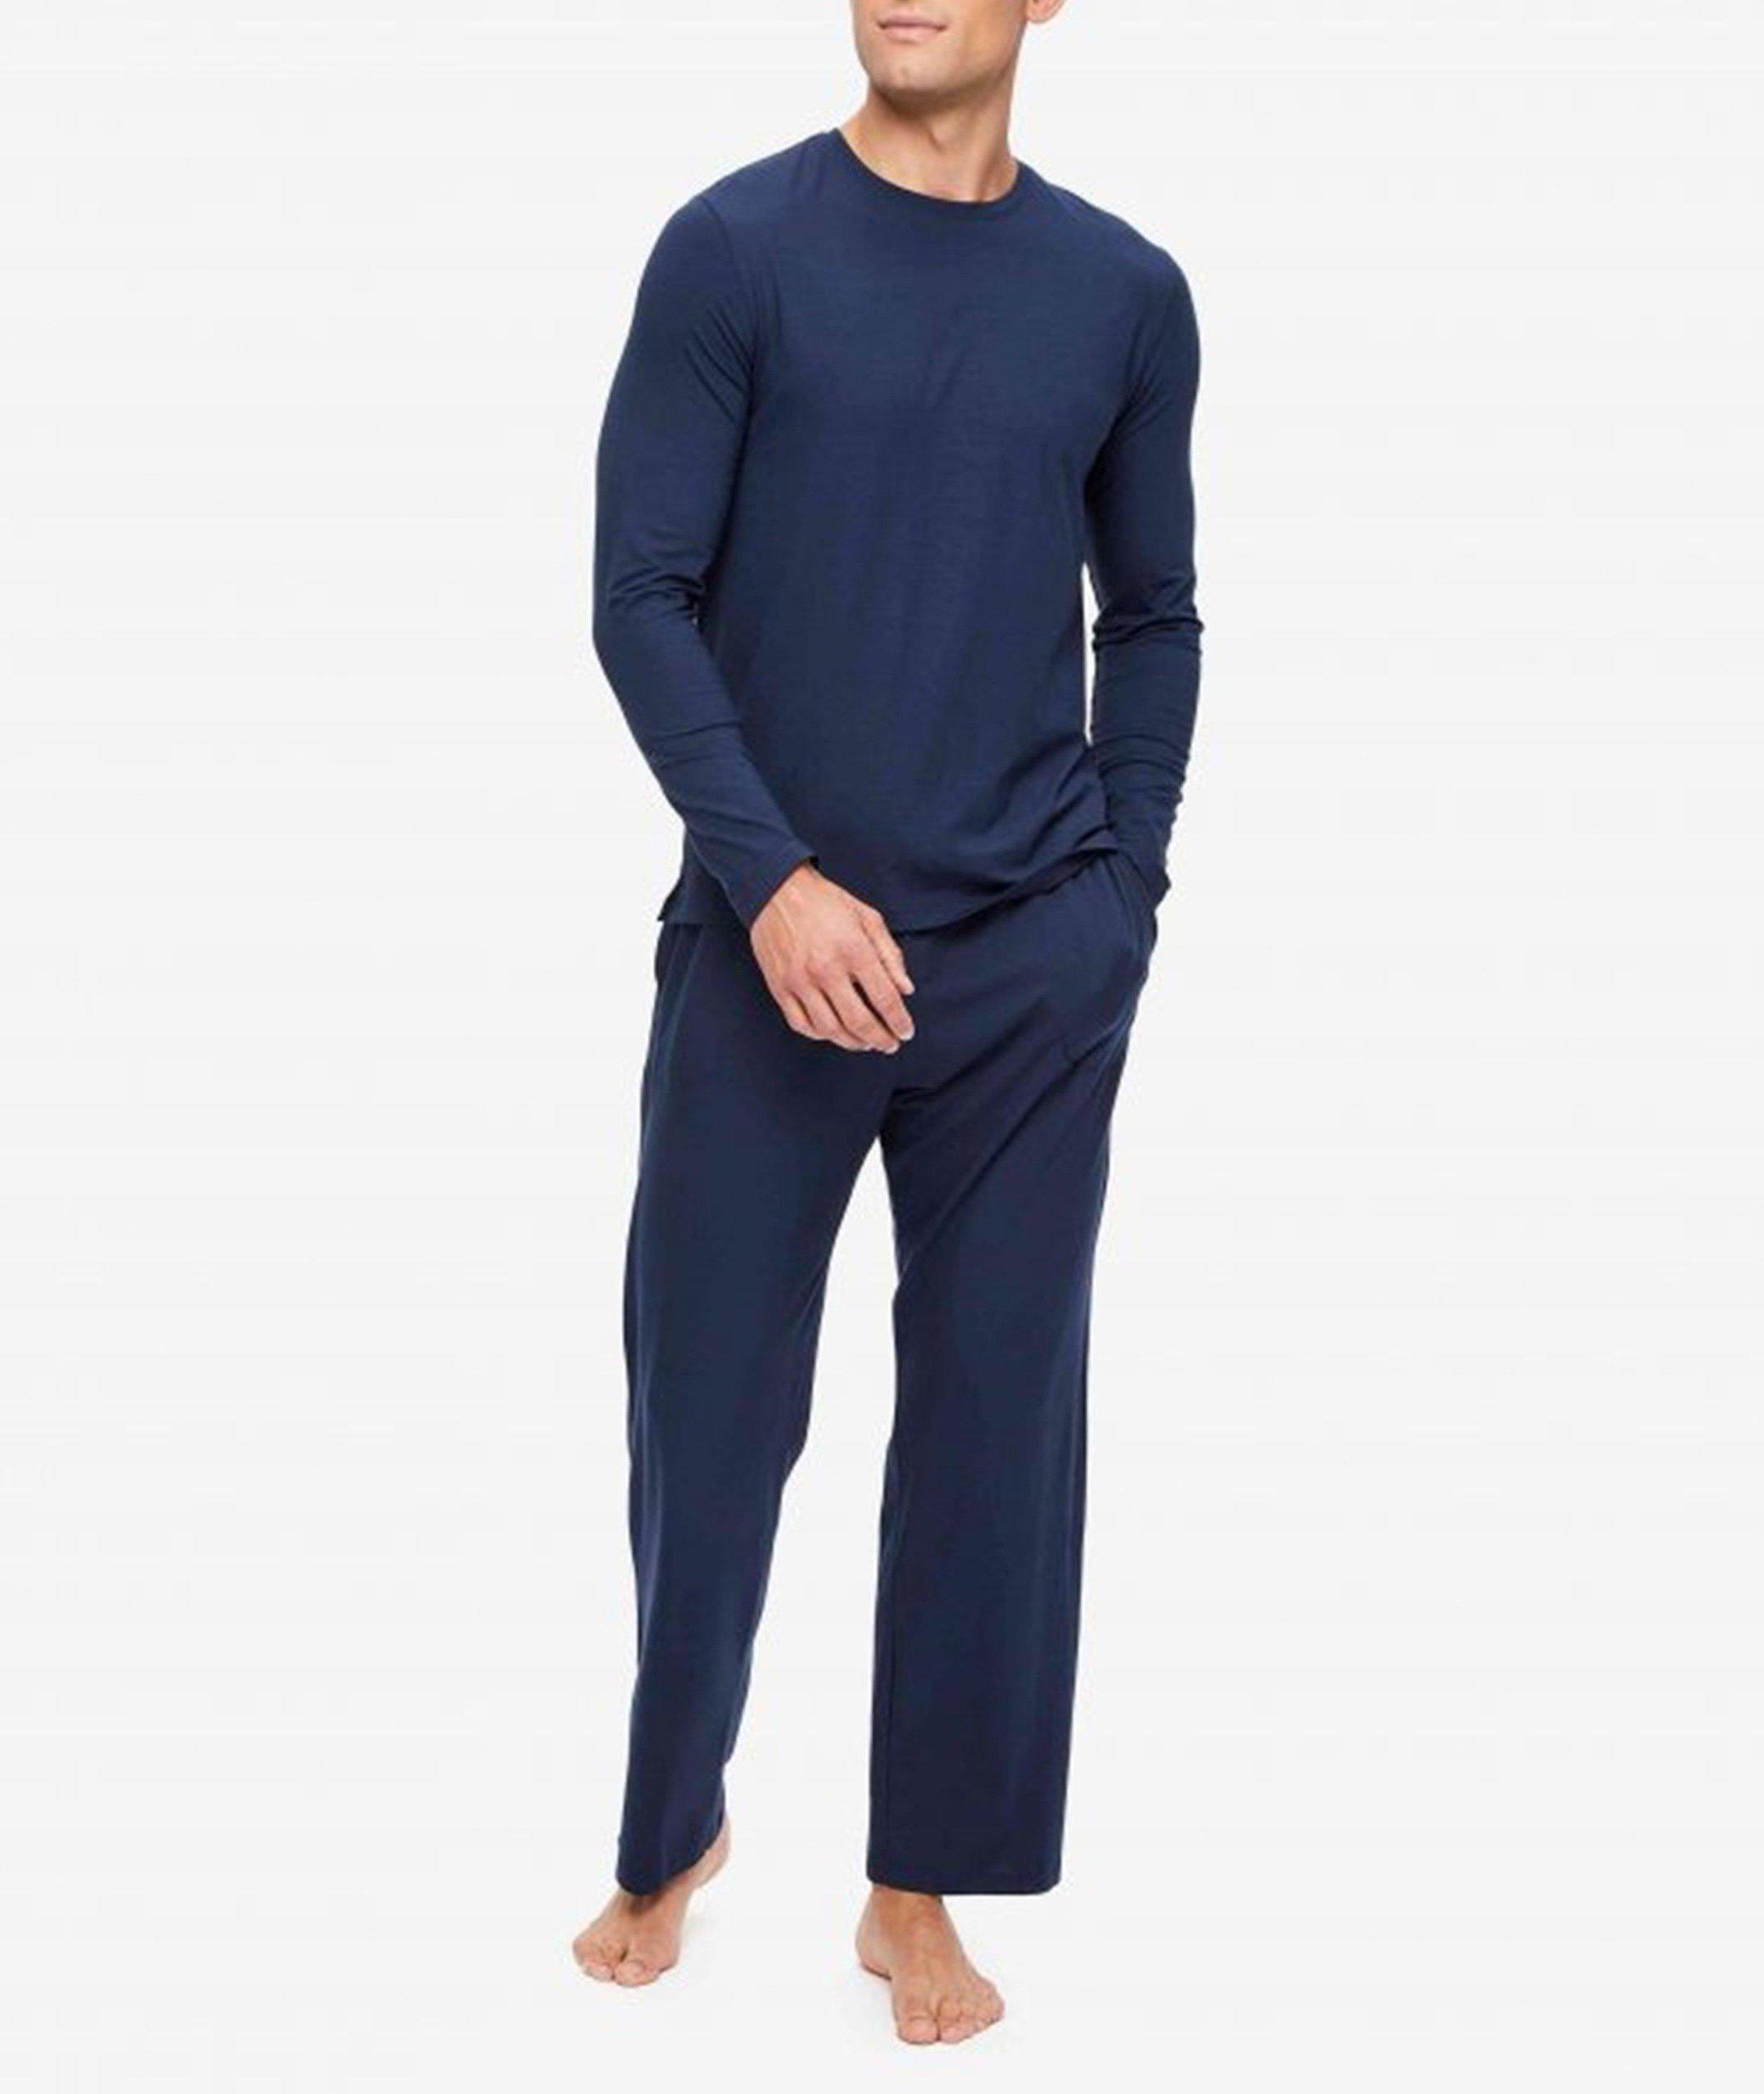 Micro Modal Tall Men's Underwear in Blue